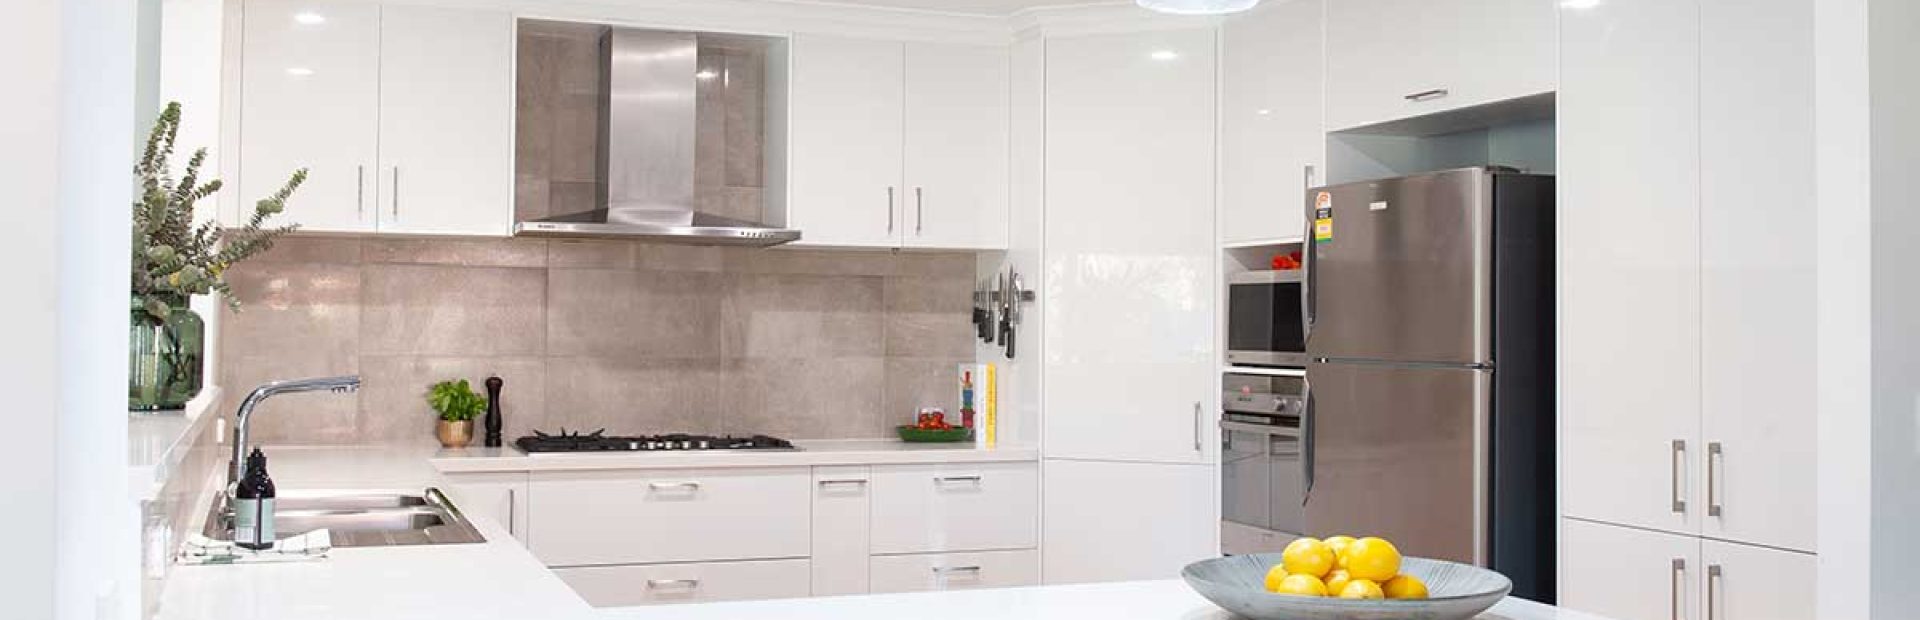 White gloss diy kitchen renovation